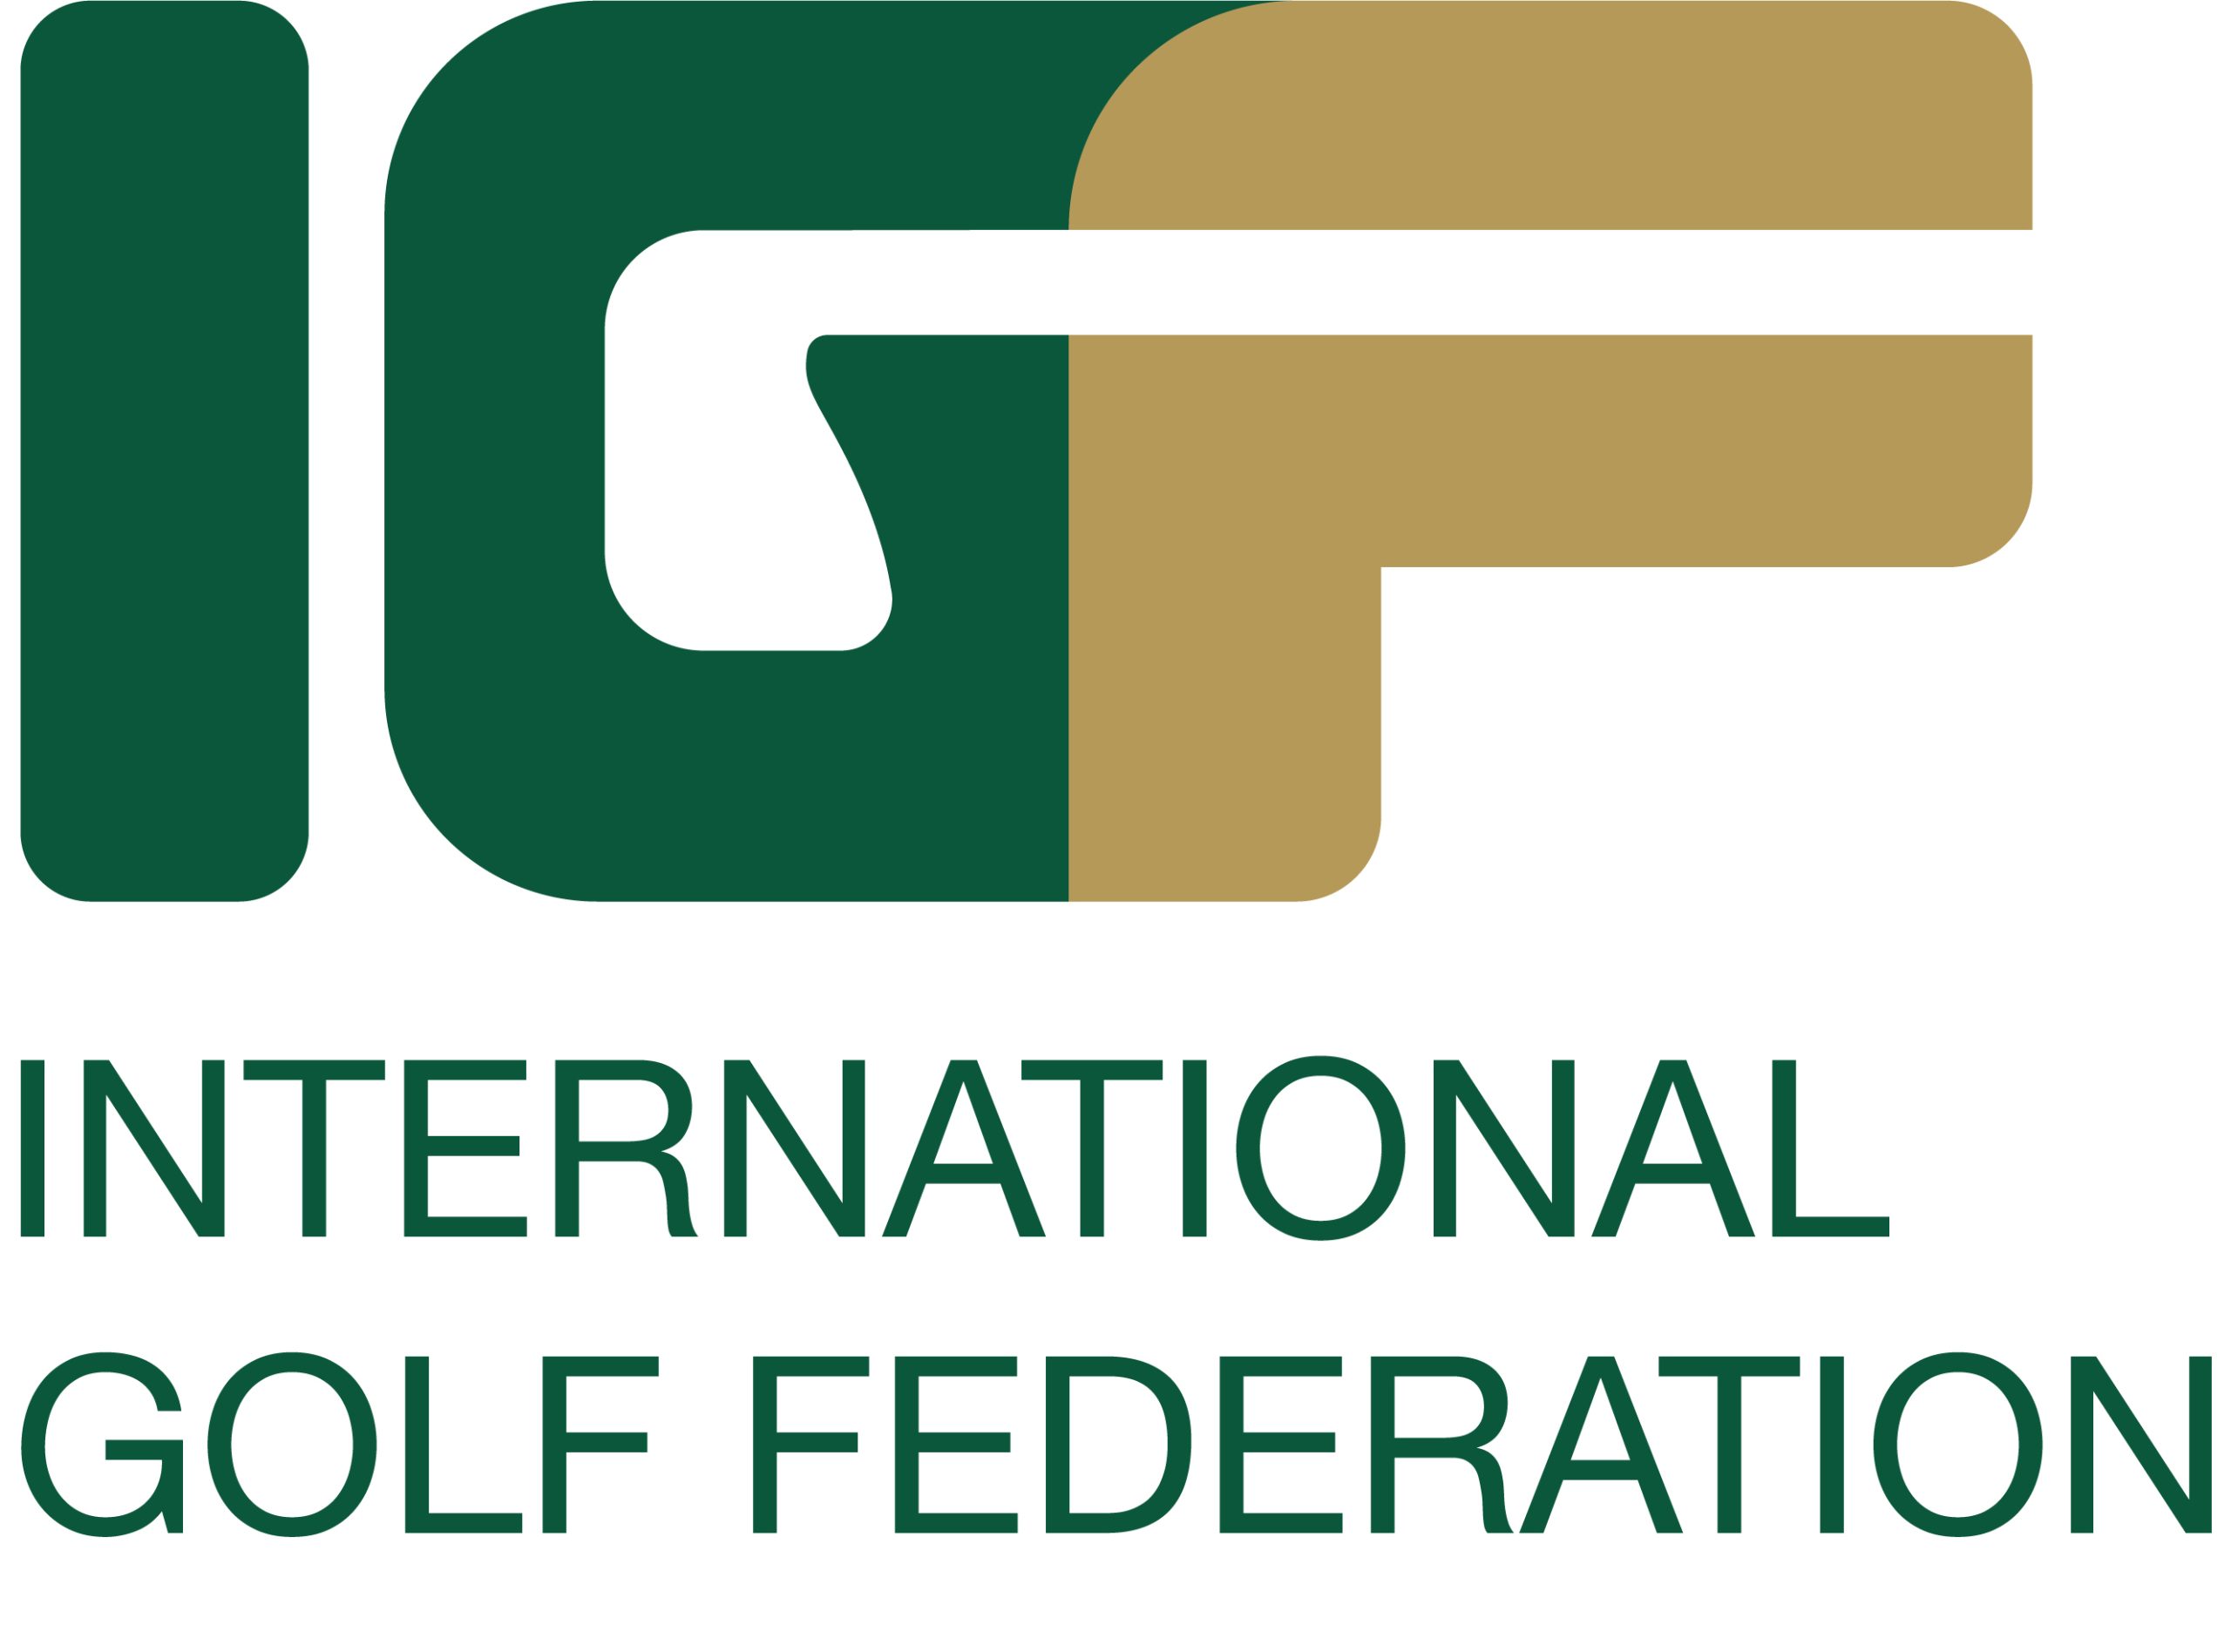 International Golf Federation (IGF)